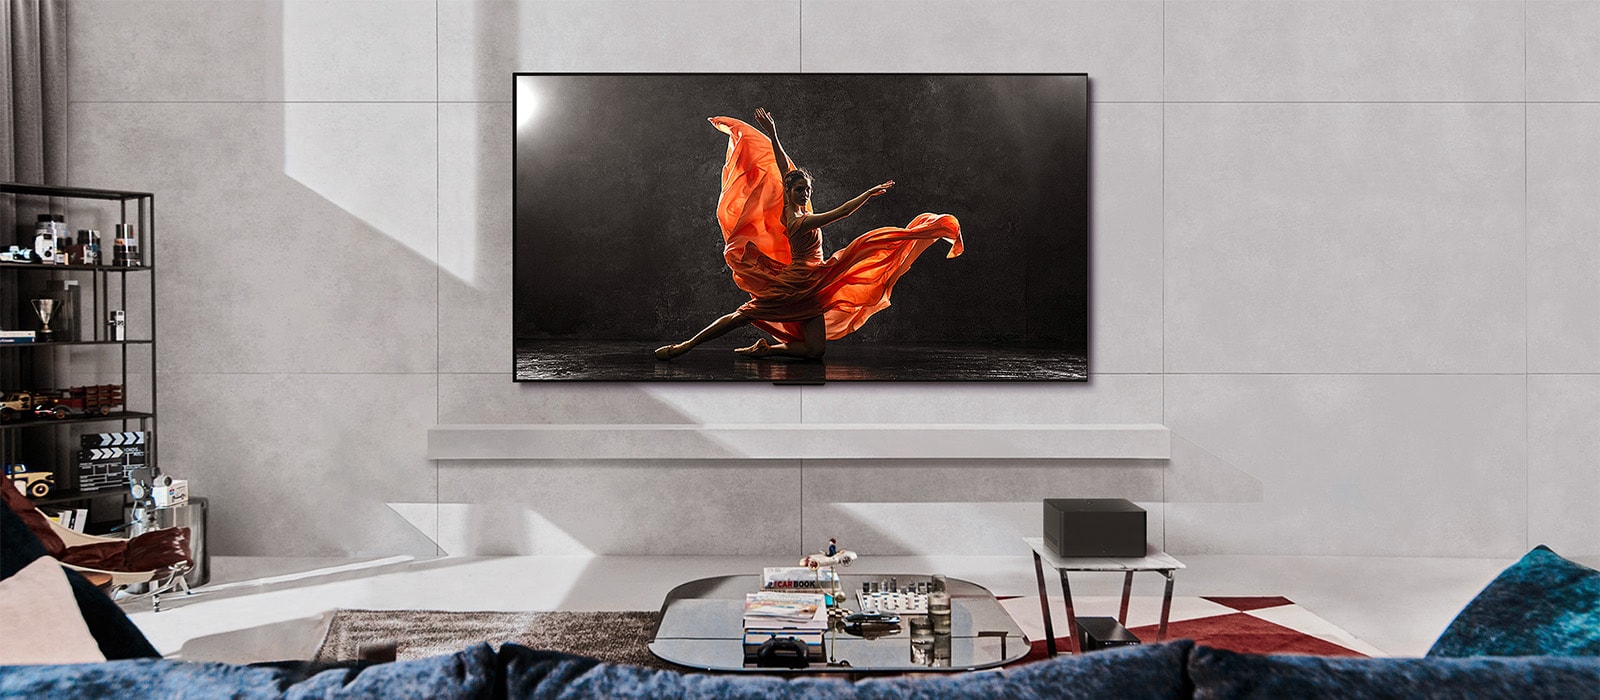 LG SIGNATURE OLED M4 TV és LG Soundbar hangprojektor egy modern nappaliban napközben. A sötét színpadon táncost ábrázoló képernyőkép az ideális fényerősséggel jelenik meg.